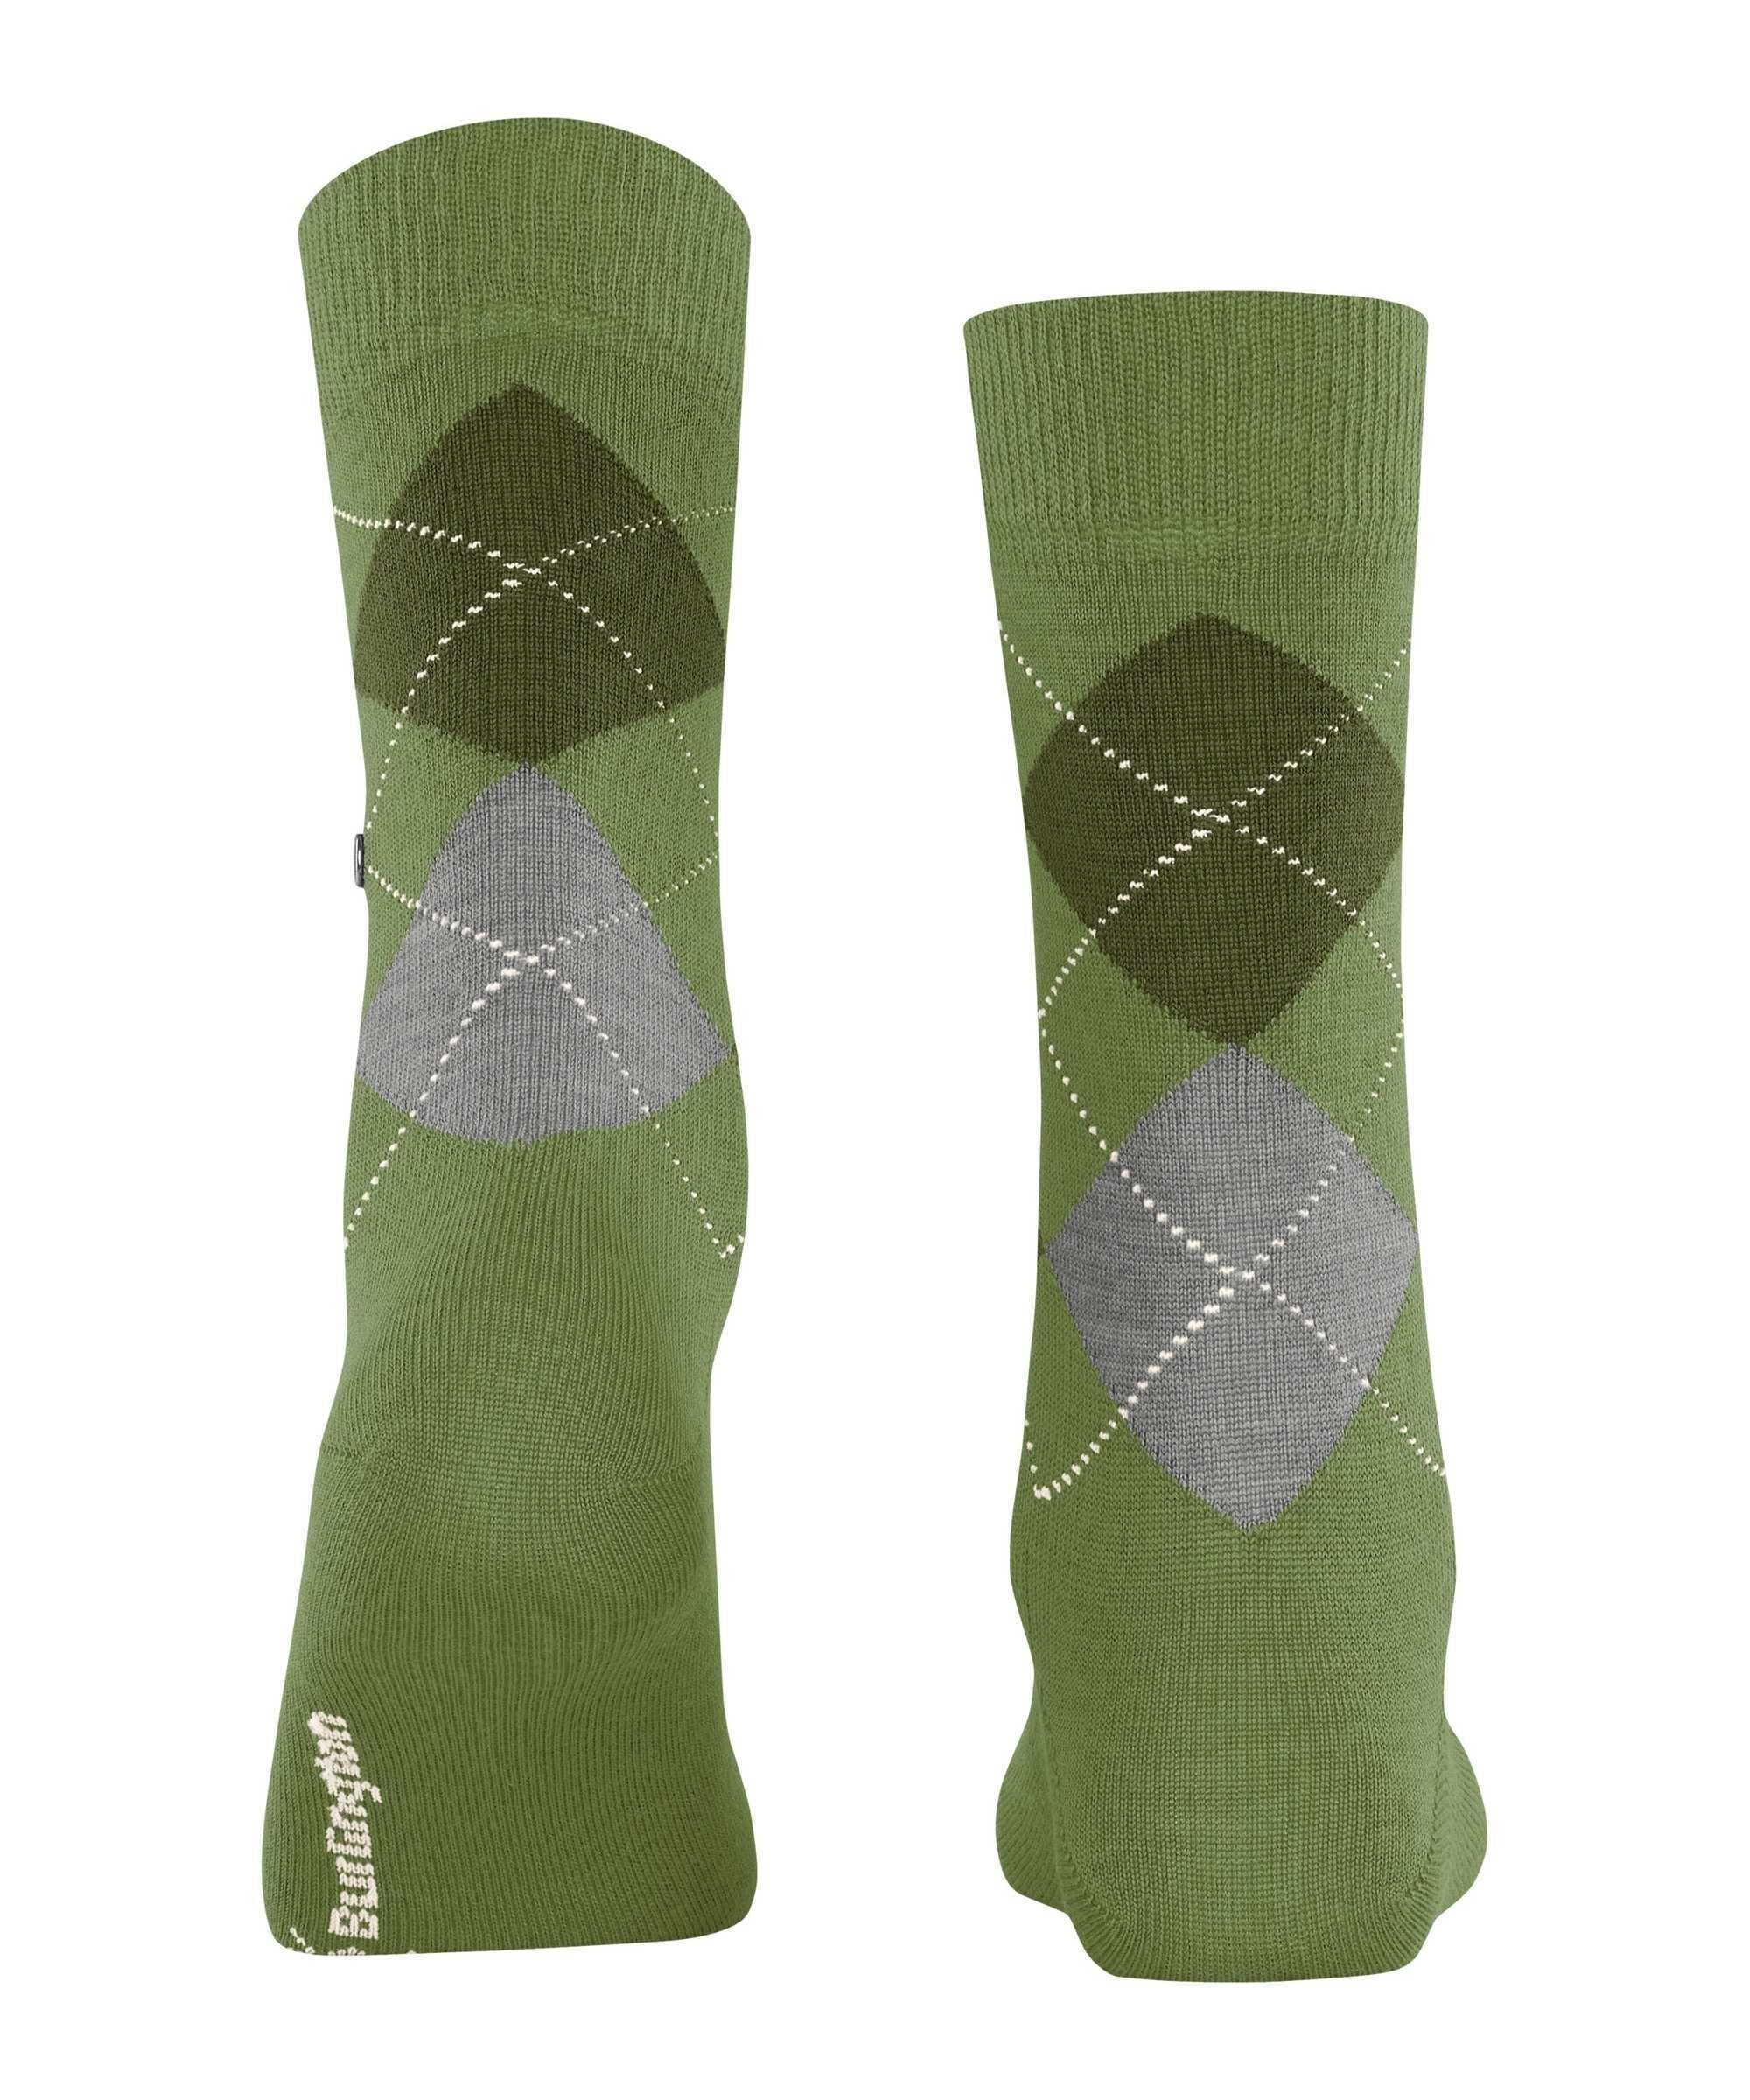 Burlington Kurzsocken Damen Socken (Shamrock) Grün Kurzstrumpf - MARYLEBONE